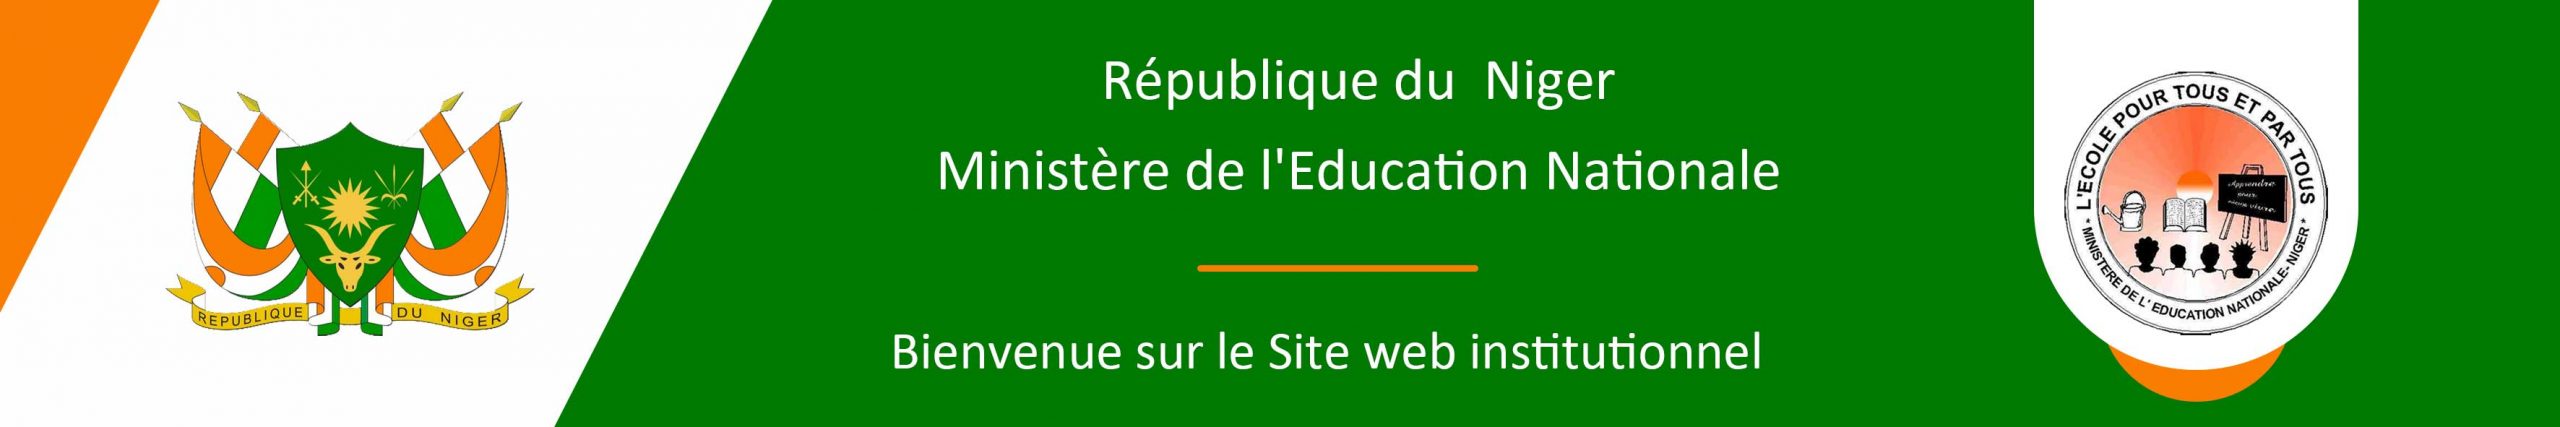 Bandeau Ministère de l'Education Nationale